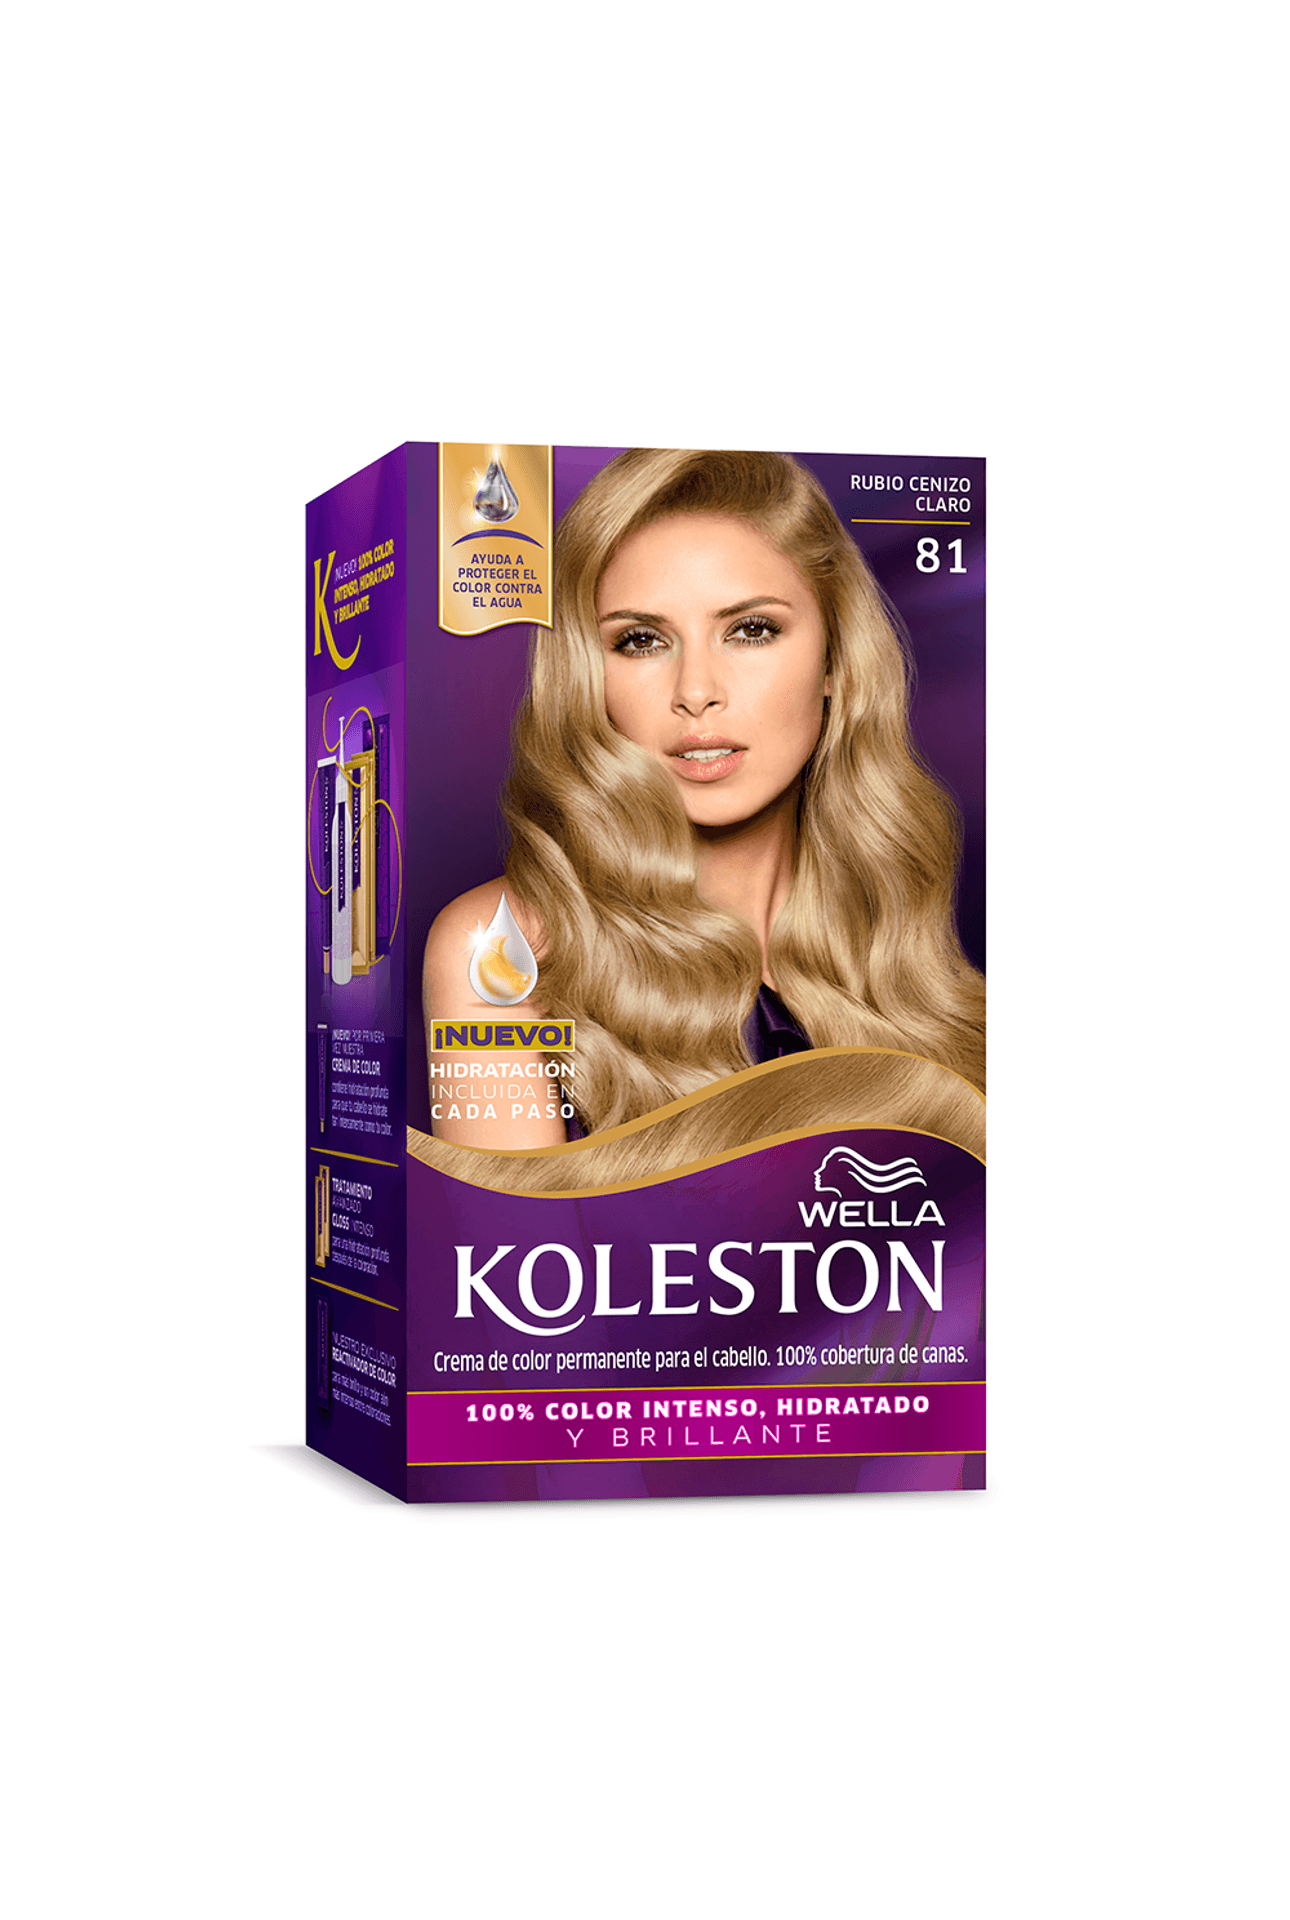 Koleston Kit de Coloración - farmaciasdelpueblo